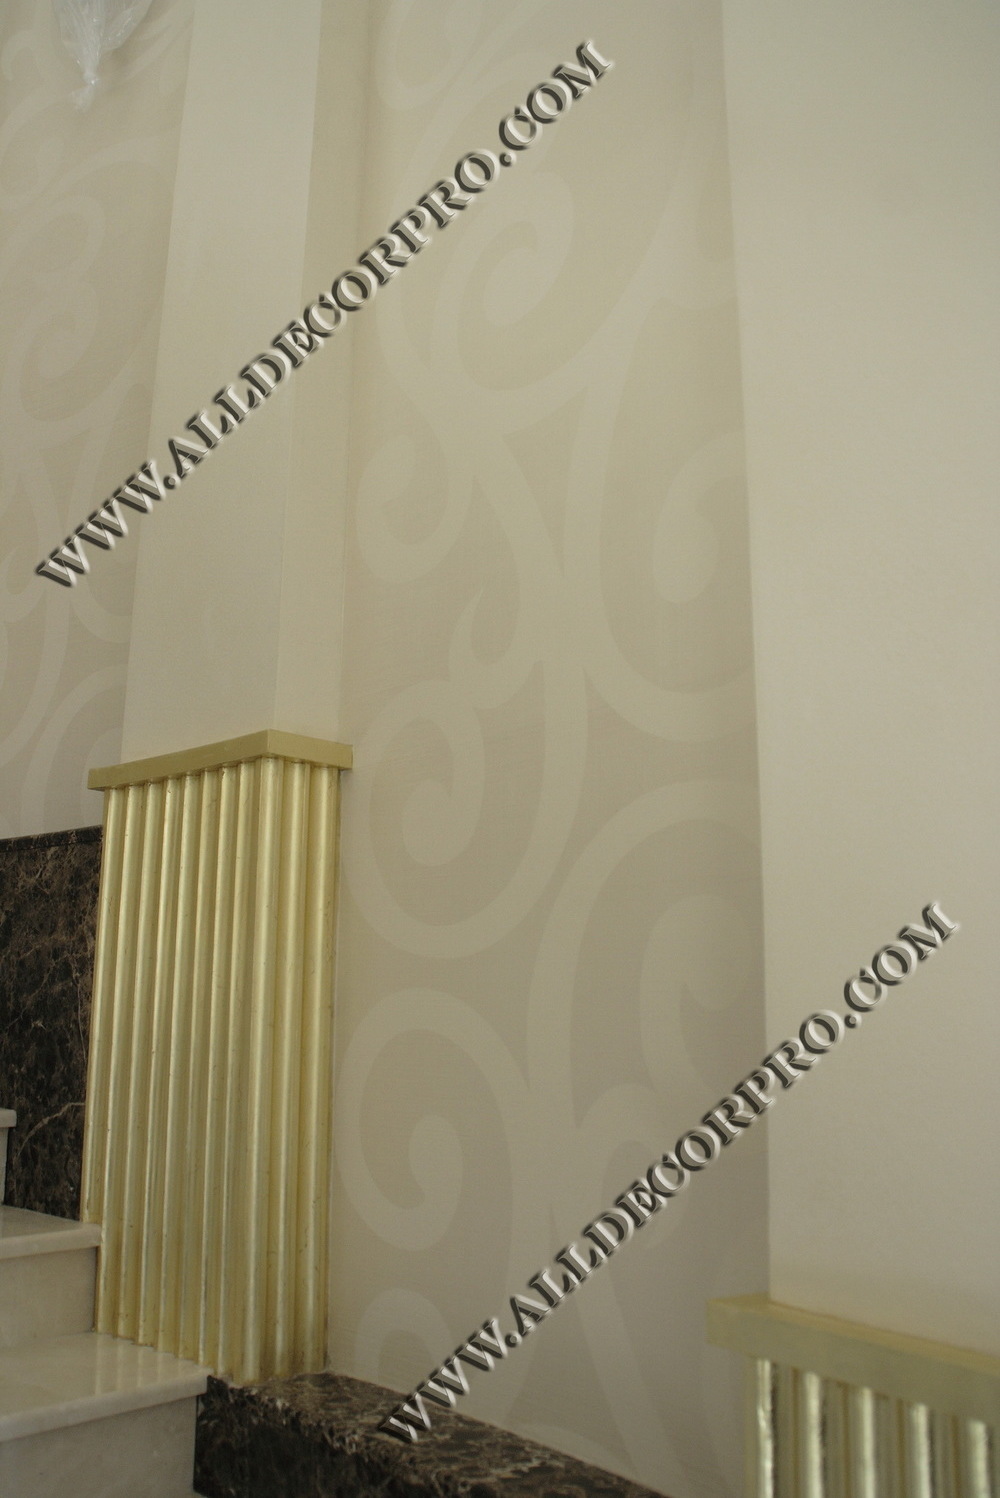 Стены декорированные венецианской штукатуркой имитирующей ткань